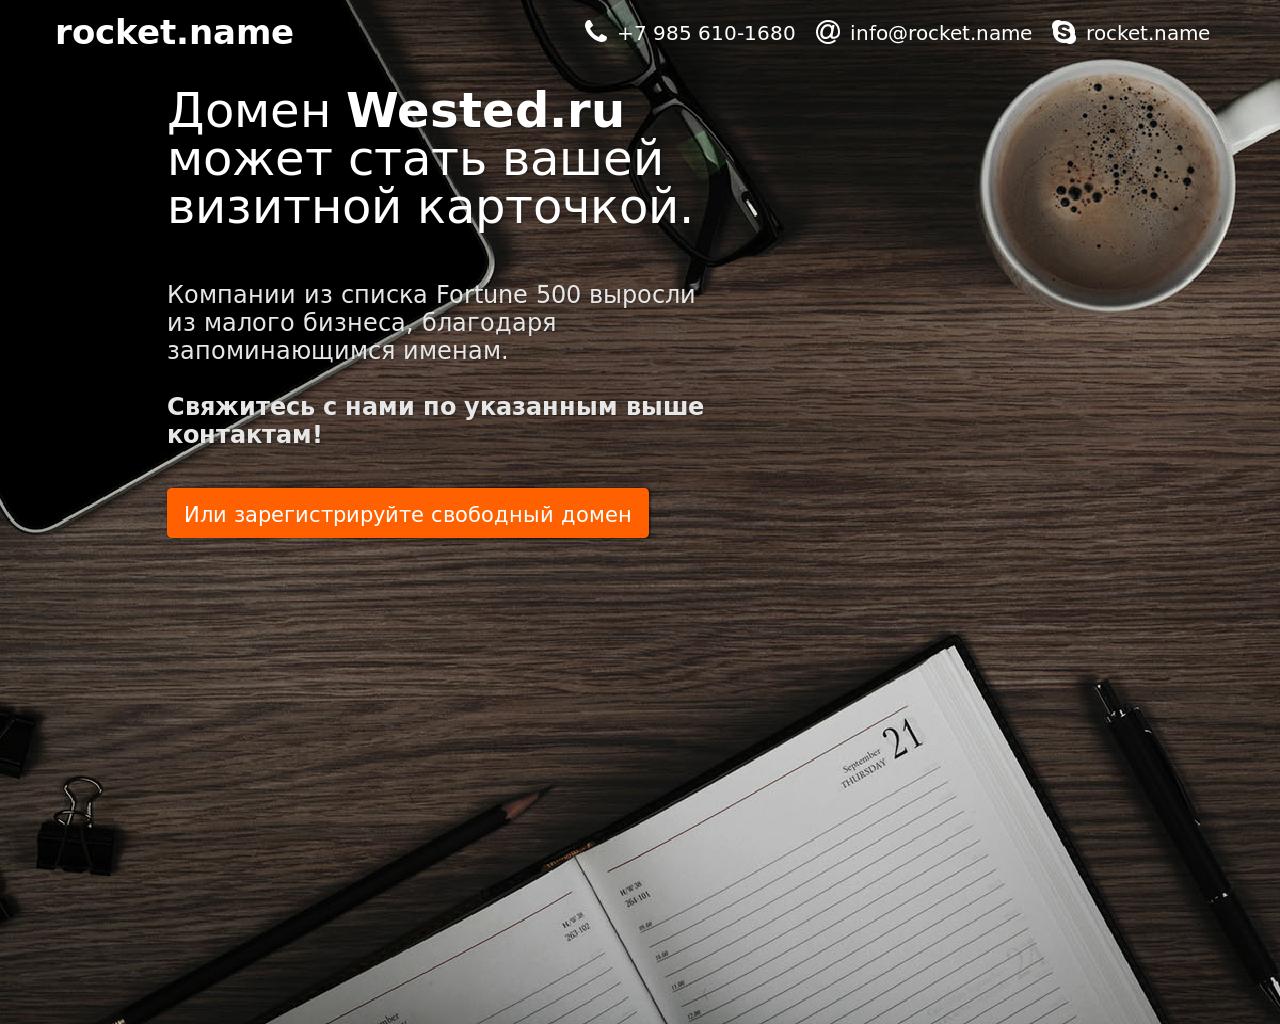 Изображение сайта wested.ru в разрешении 1280x1024